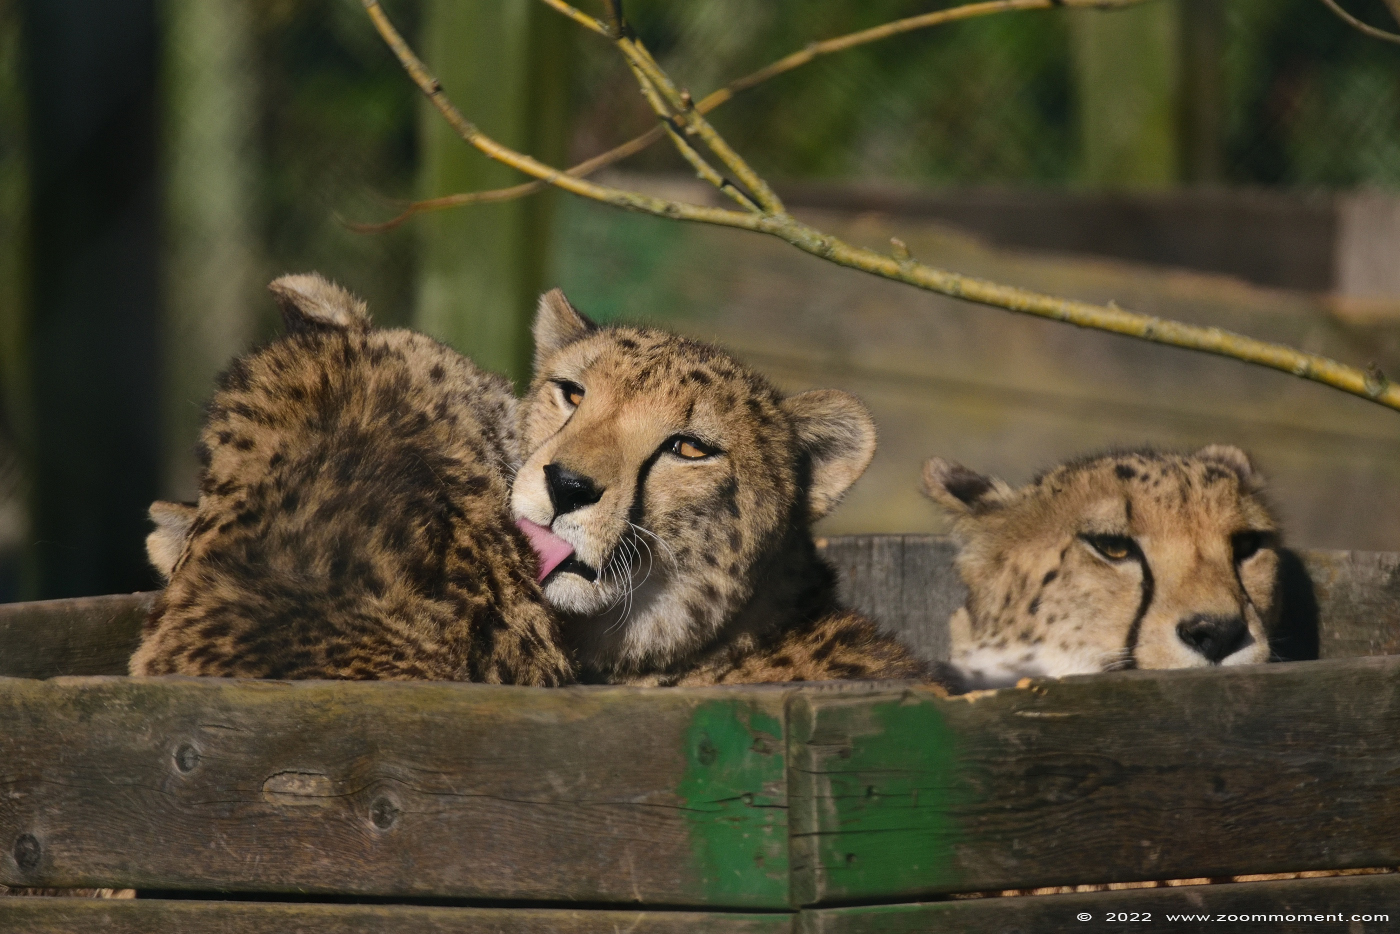 cheetah of jachtluipaard ( Acinonyx jubatus jubatus ) cheeta Gepard
Keywords: Monde Sauvage Belgium cheetah jachtluipaard Acinonyx jubatus jubatus cheeta Gepard